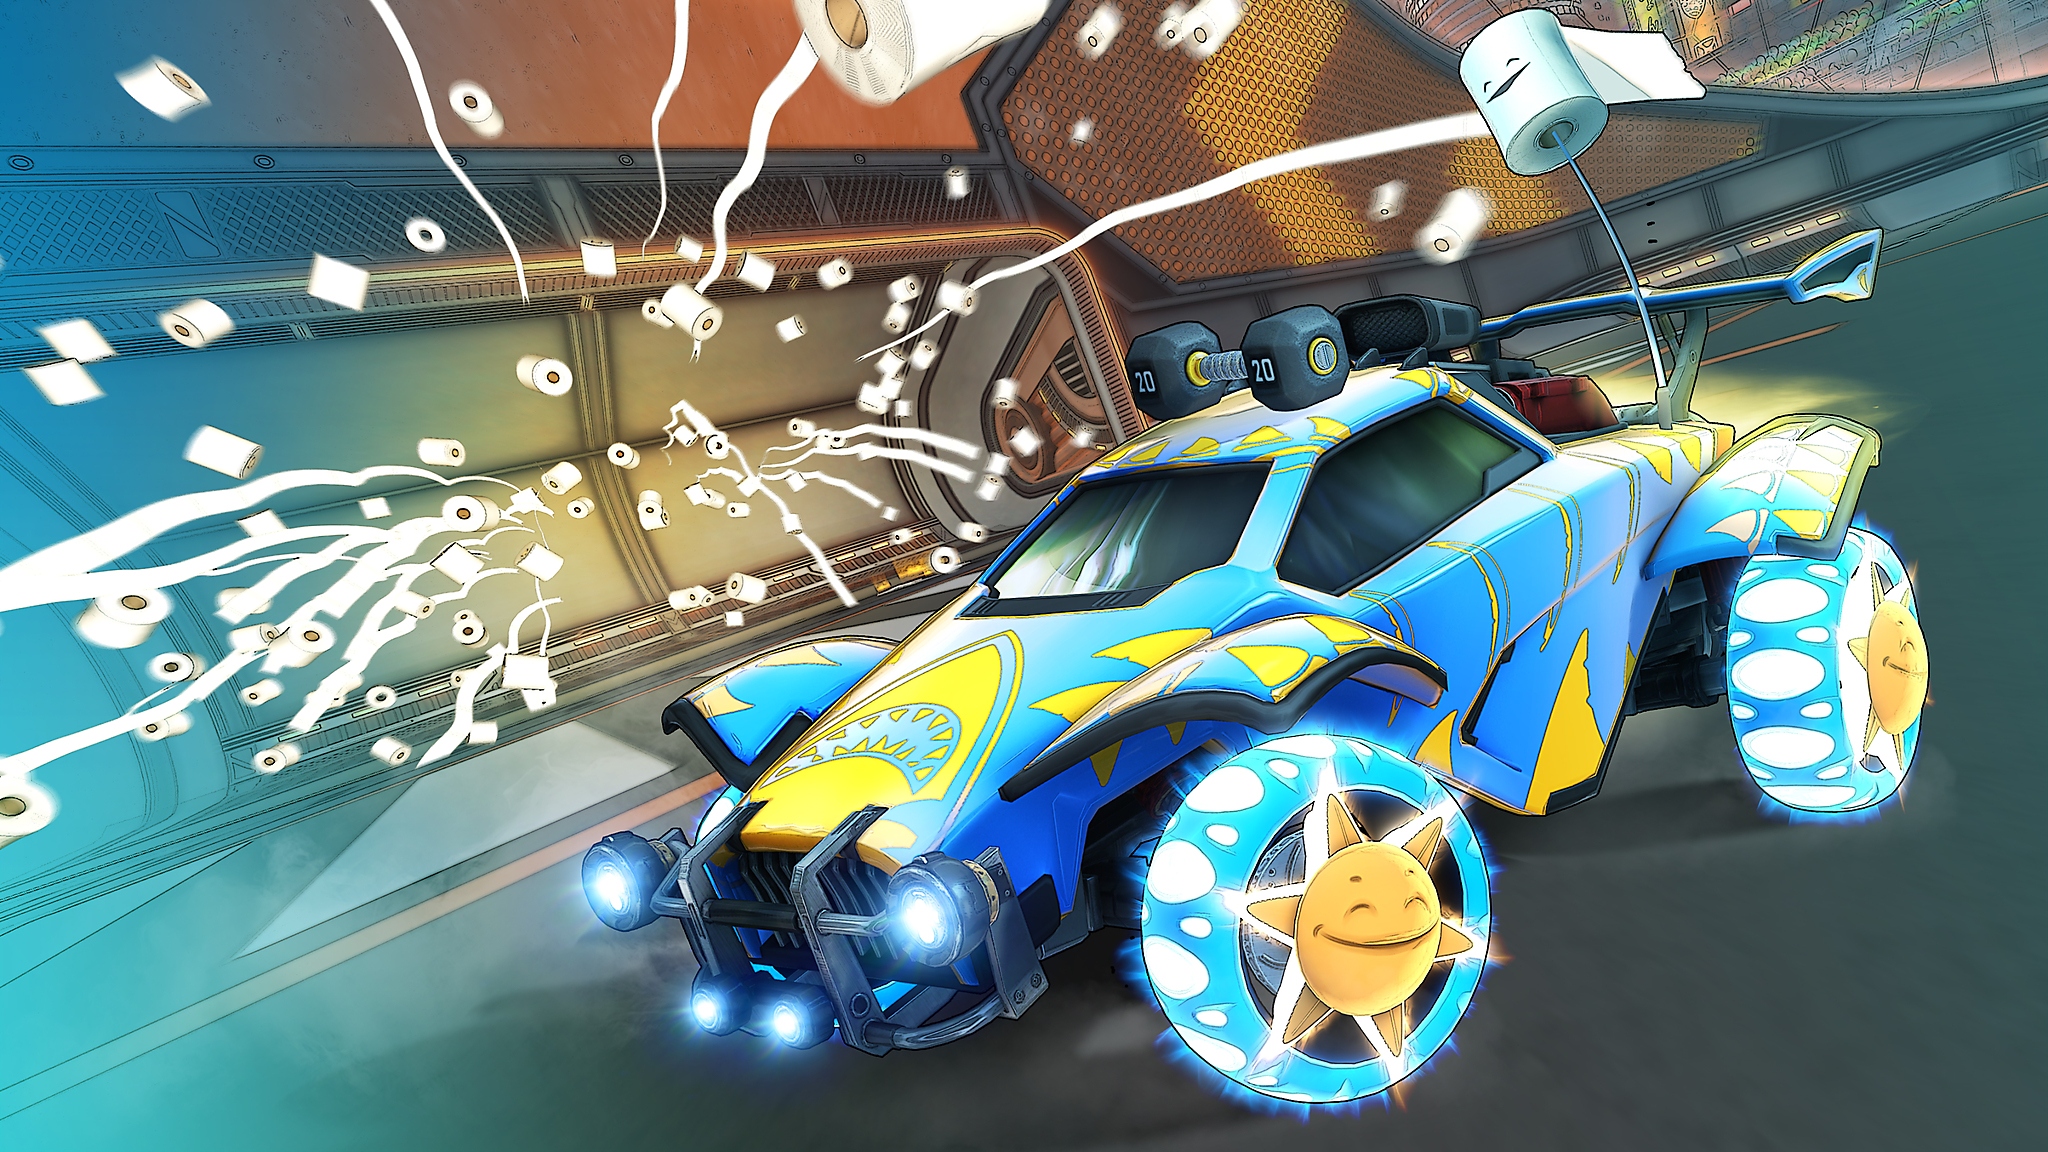 Screenshot zu Saison 6 von Rocket League, der ein blau-gelbes Auto zeigt, das mit vielen Klopapierrollen durch die Luft wirbelt.